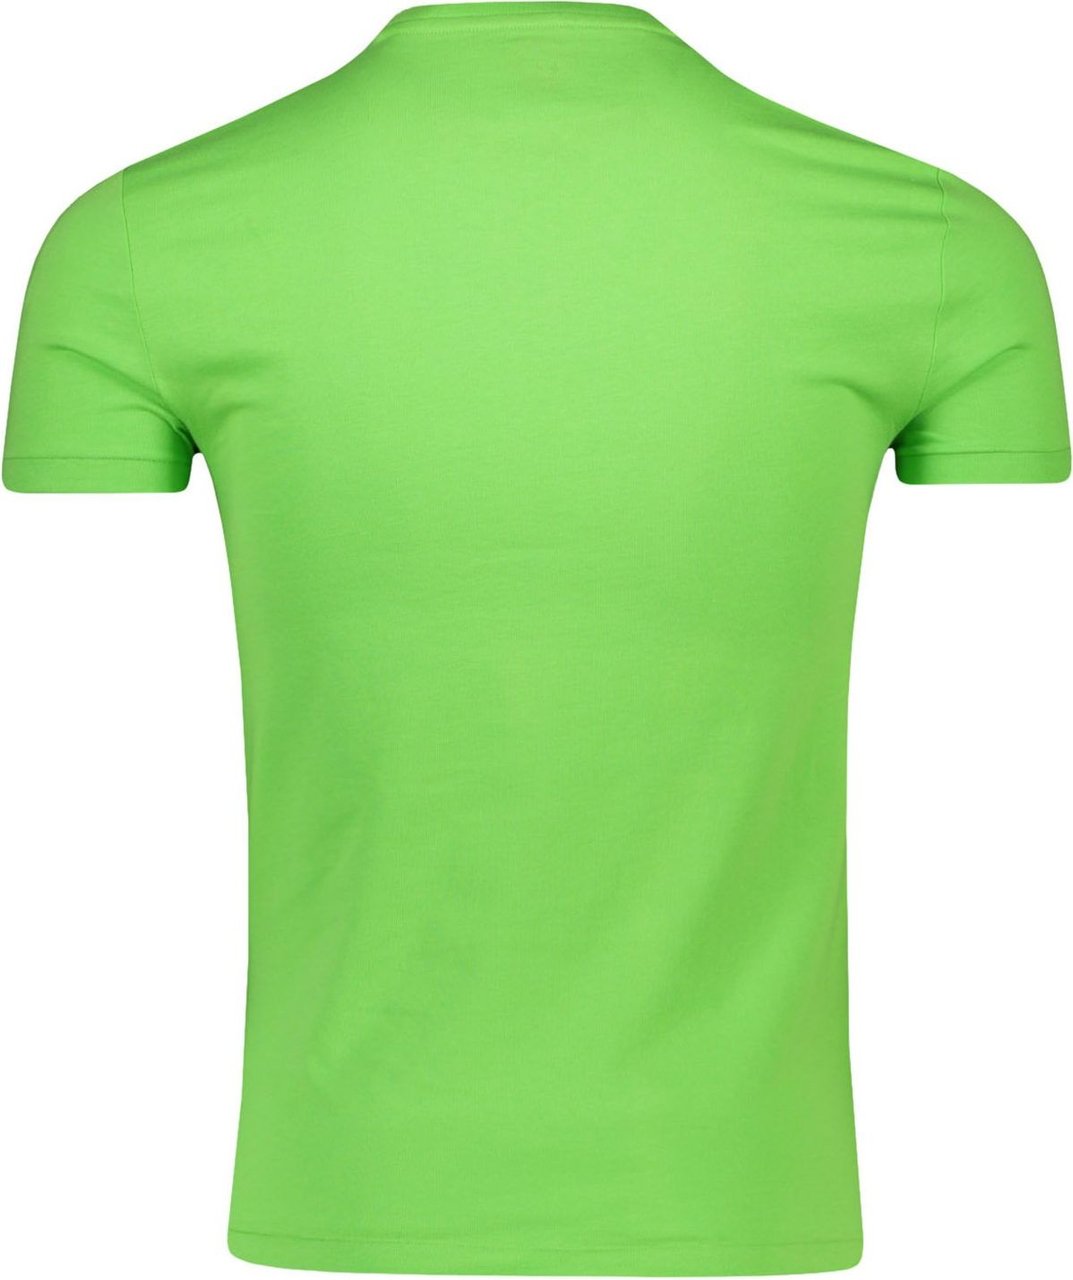 Ralph Lauren Polo T-shirt Groen Groen